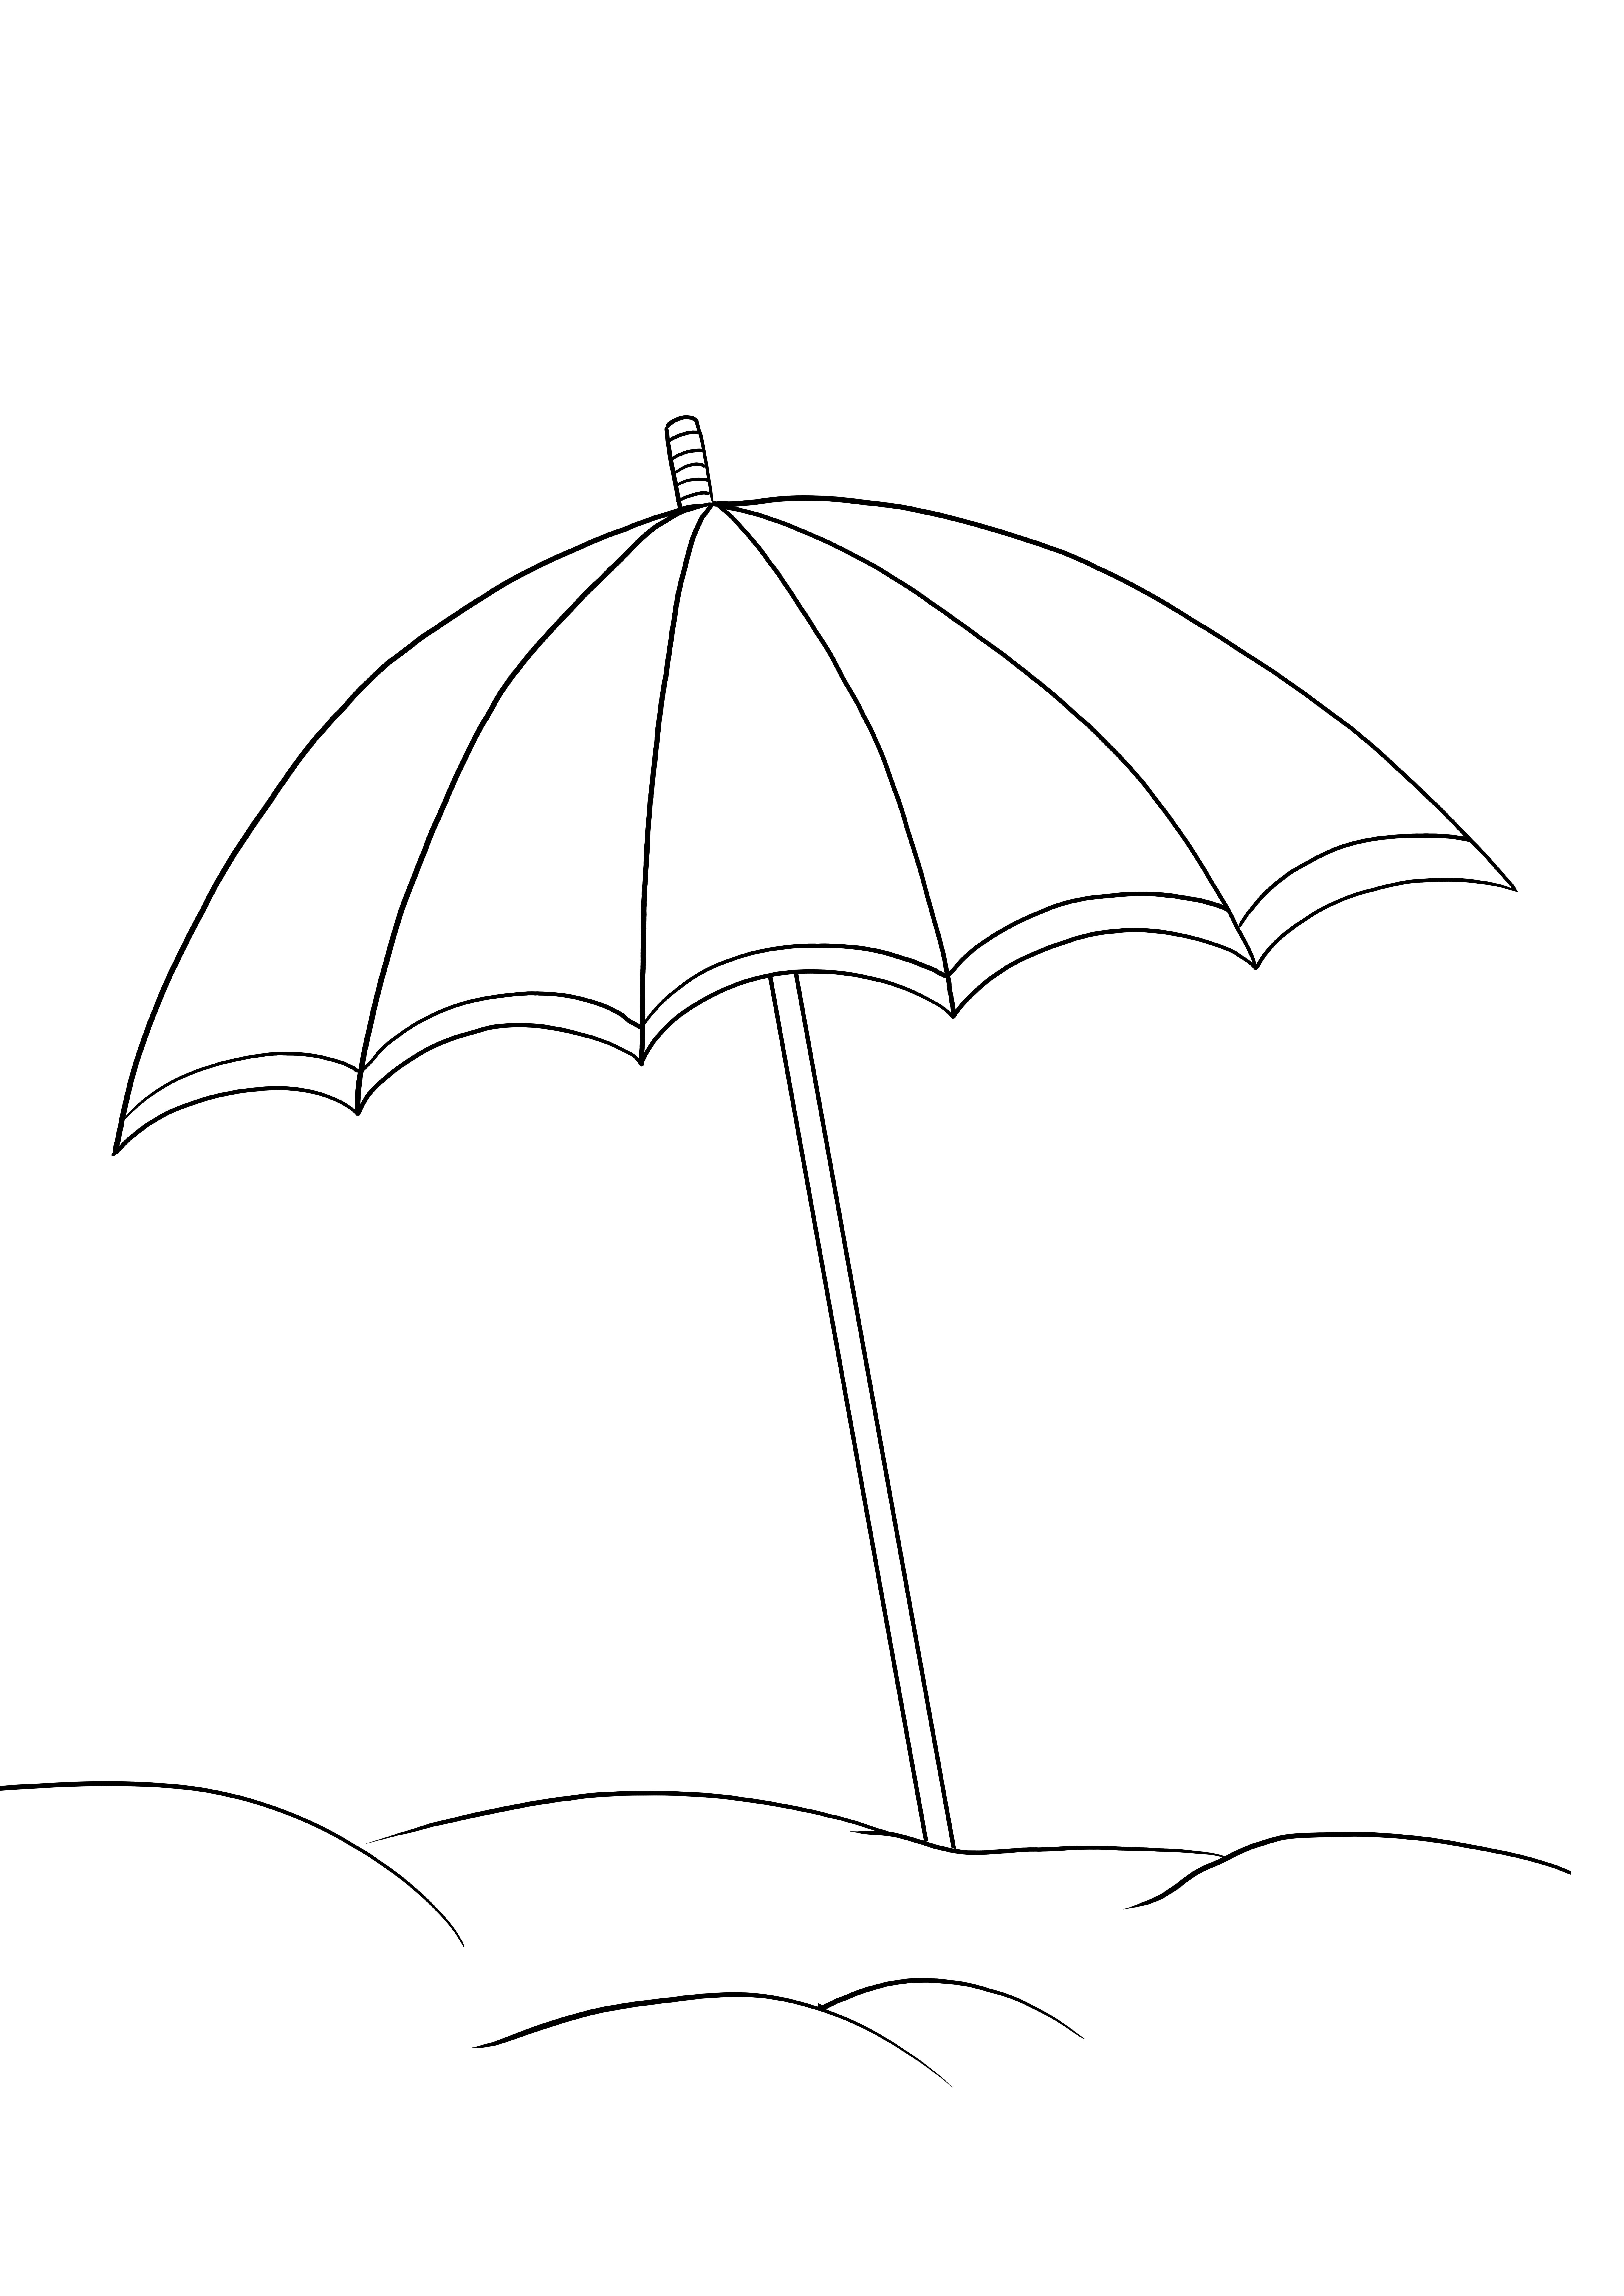 Çocukların eğlenmesi için plaj şemsiyesi kolay boyama sayfası